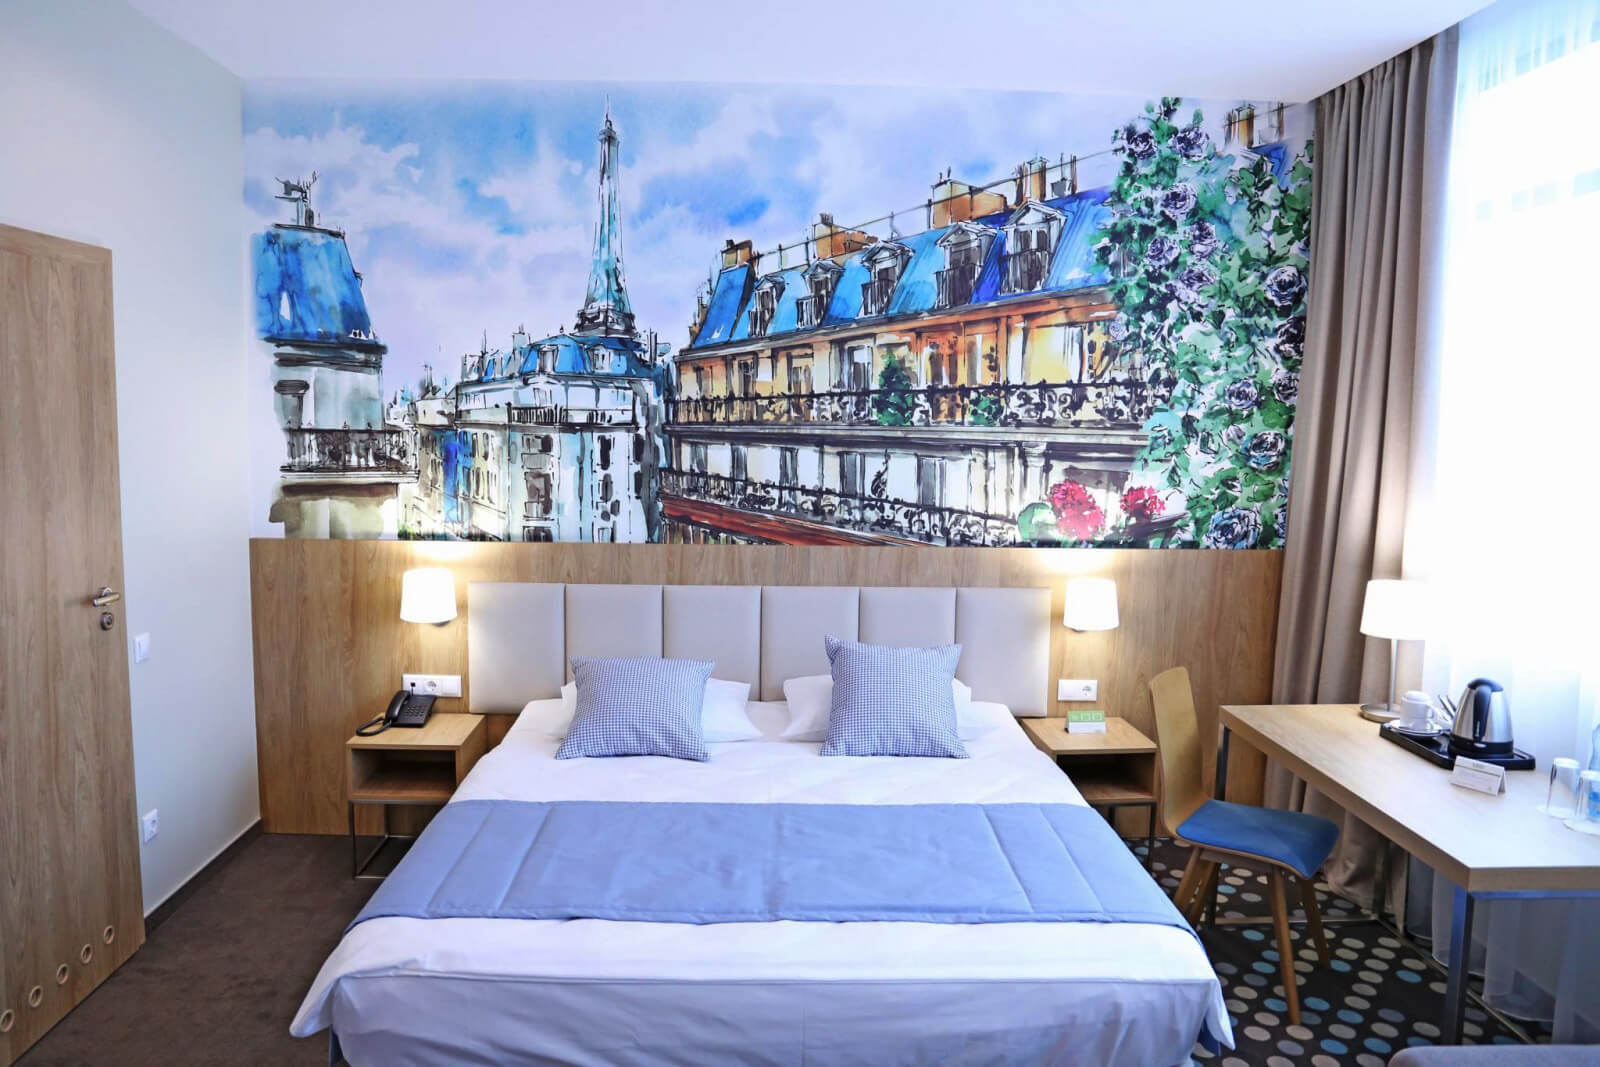 На стене у изголовья кровати красивое изображение парижского городского пейзажа.